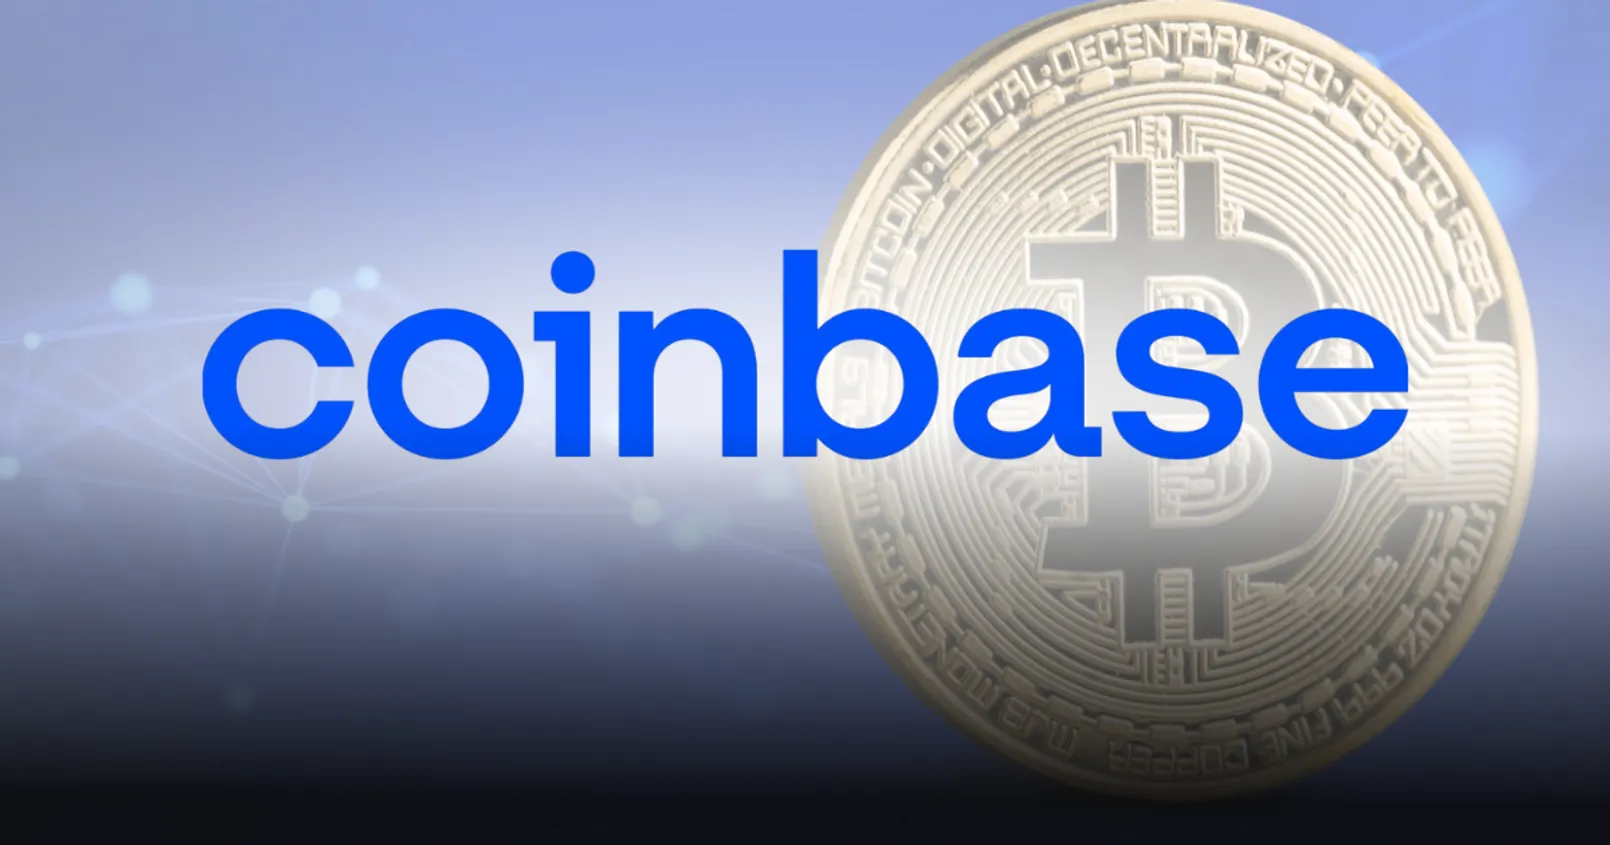 ปริมาณ Bitcoin บน Coinbase ลดลงสู่ระดับต่ำสุดในรอบ 9 ปี!